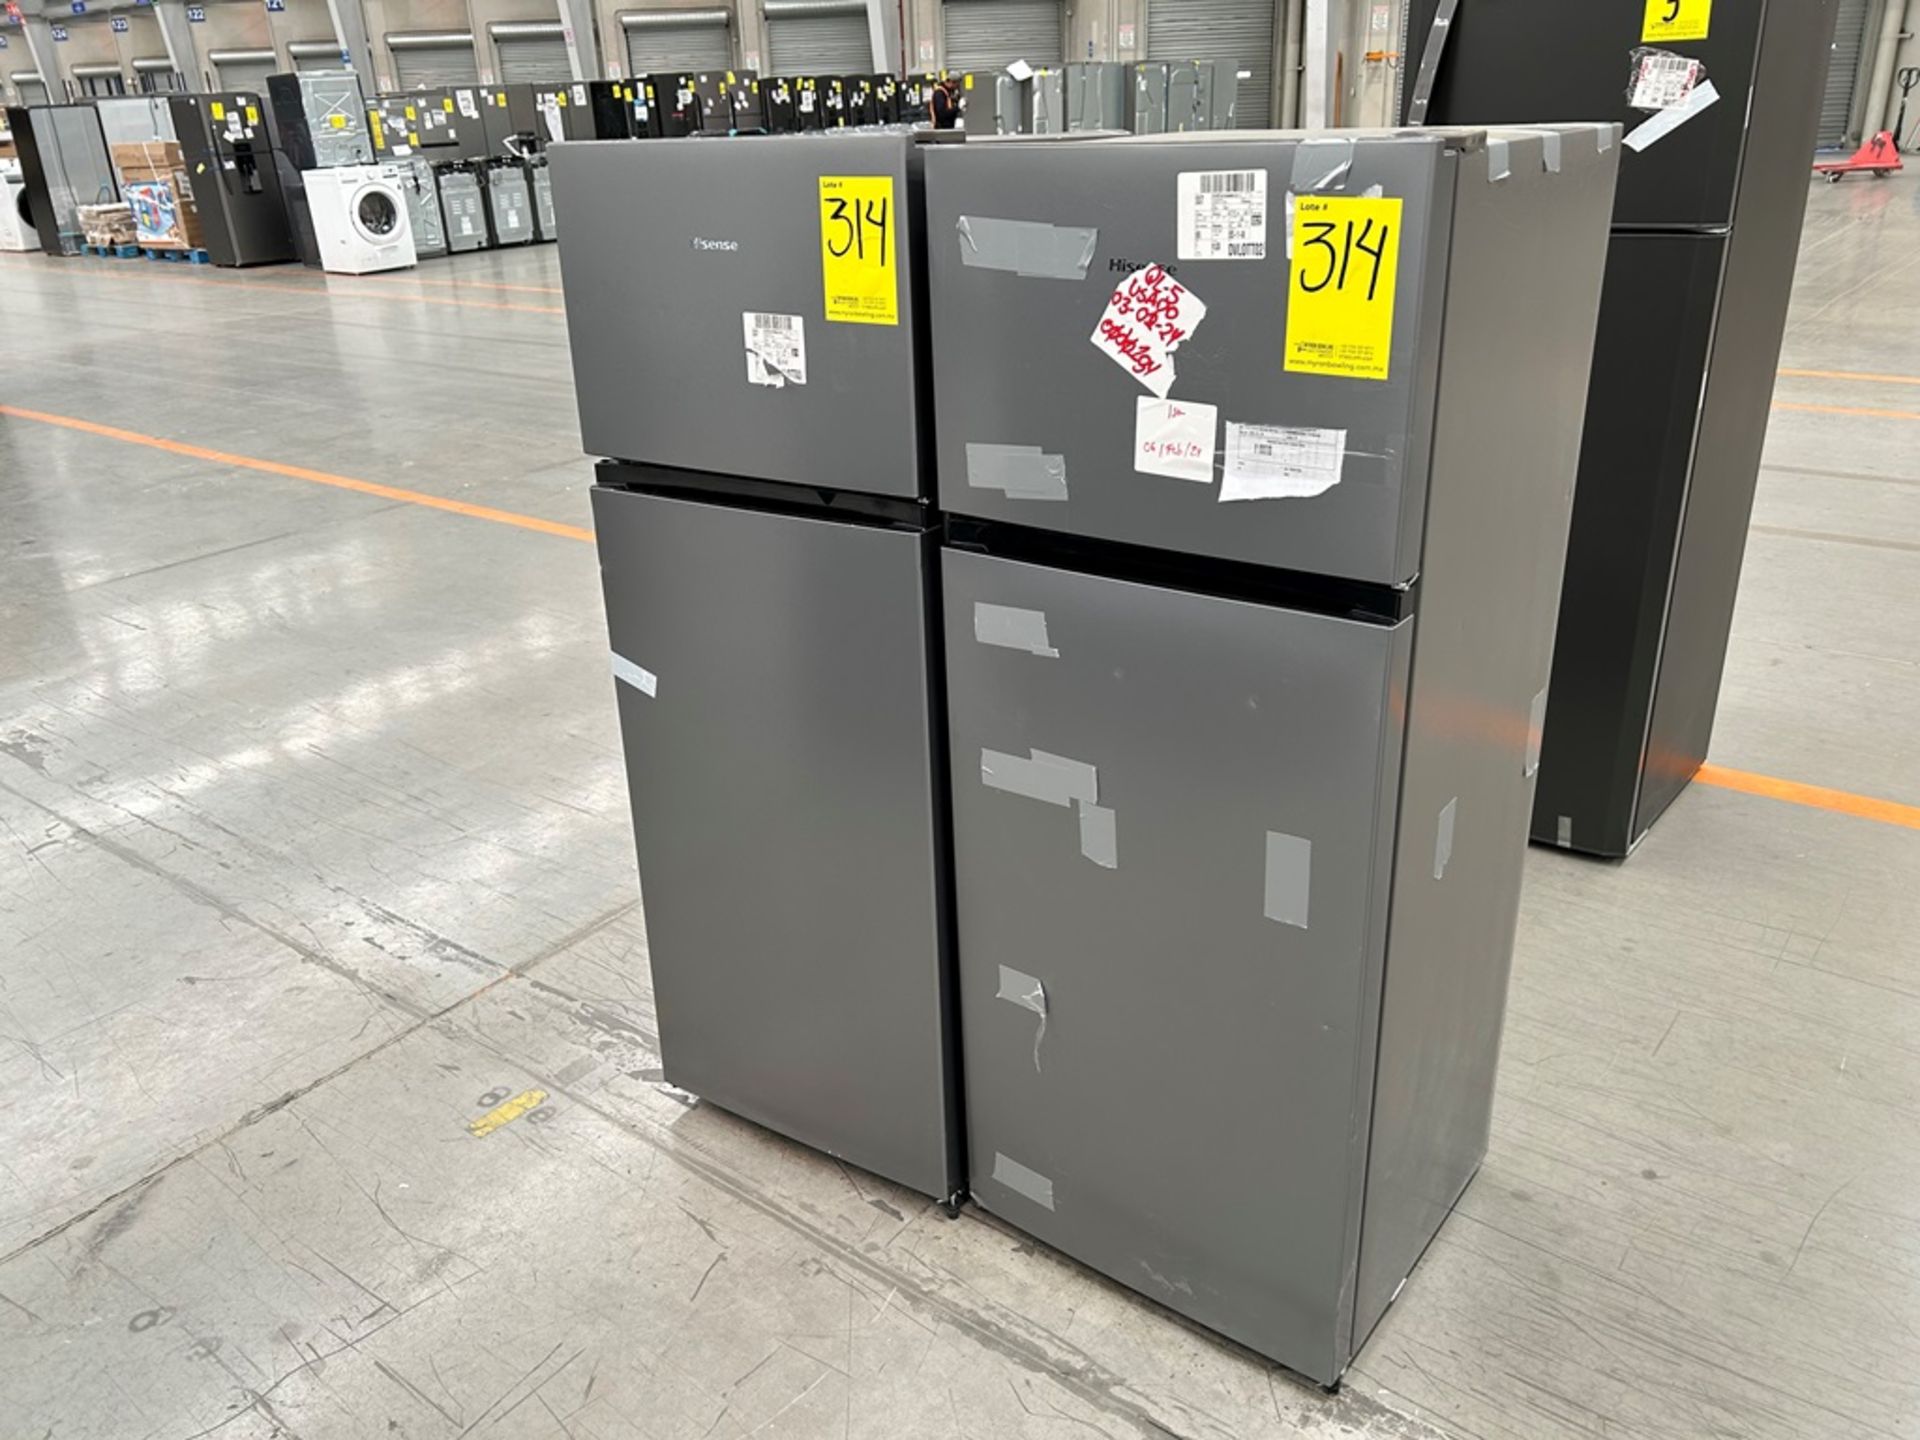 Lote de 2 Refrigeradores, contiene: 1 Refrigerador Marca HISENSE, Modelo RT80D6AGX Serie VP20148, C - Image 2 of 6